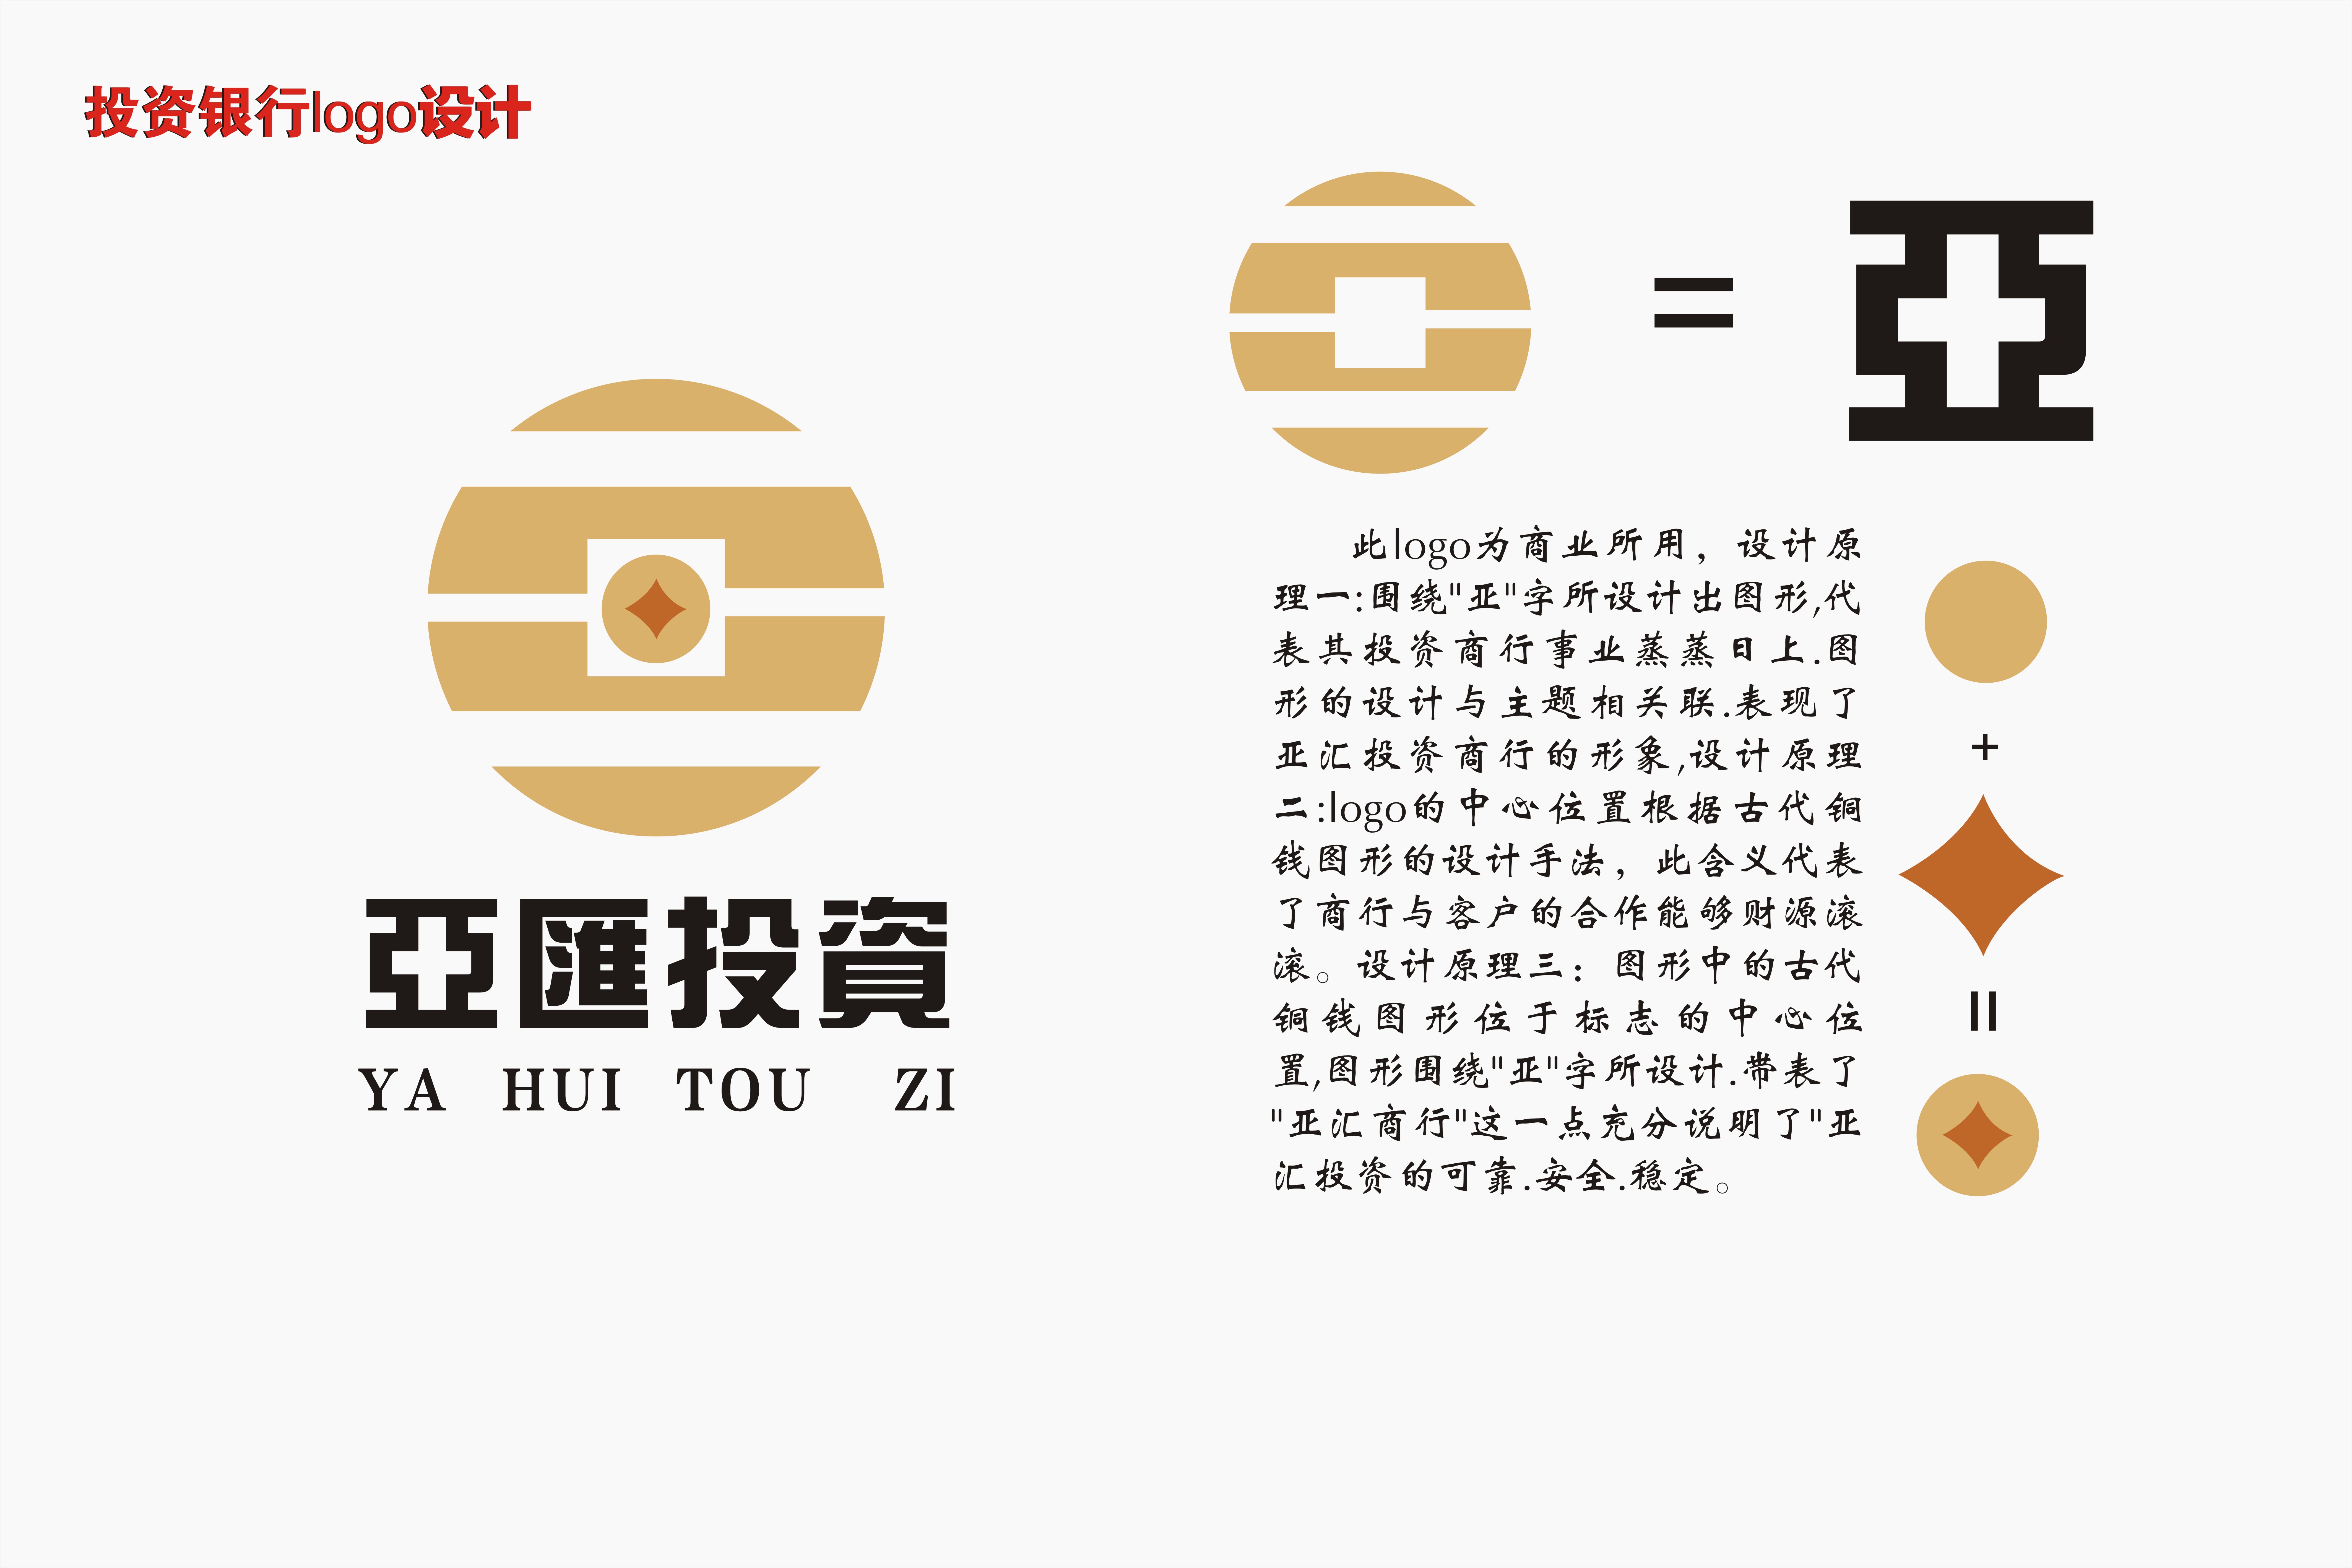 表现了亚汇投资商行的形象,设计原理二:logo的中心位置根据古代铜钱